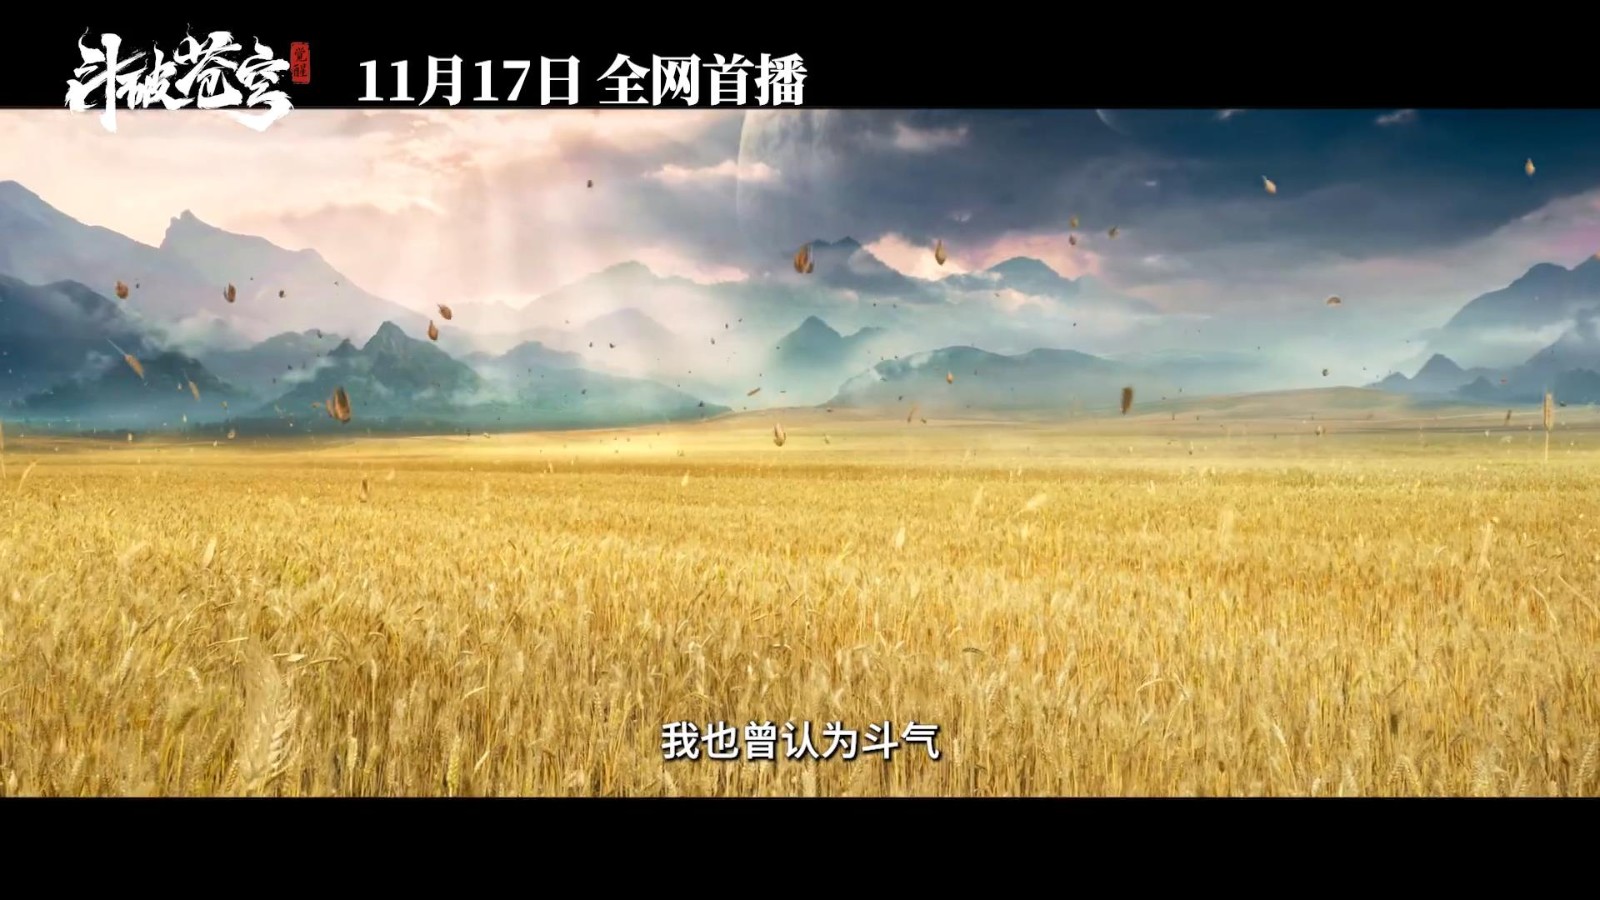 《斗破苍穹》真人电影预告 11月17日在三大平台上映